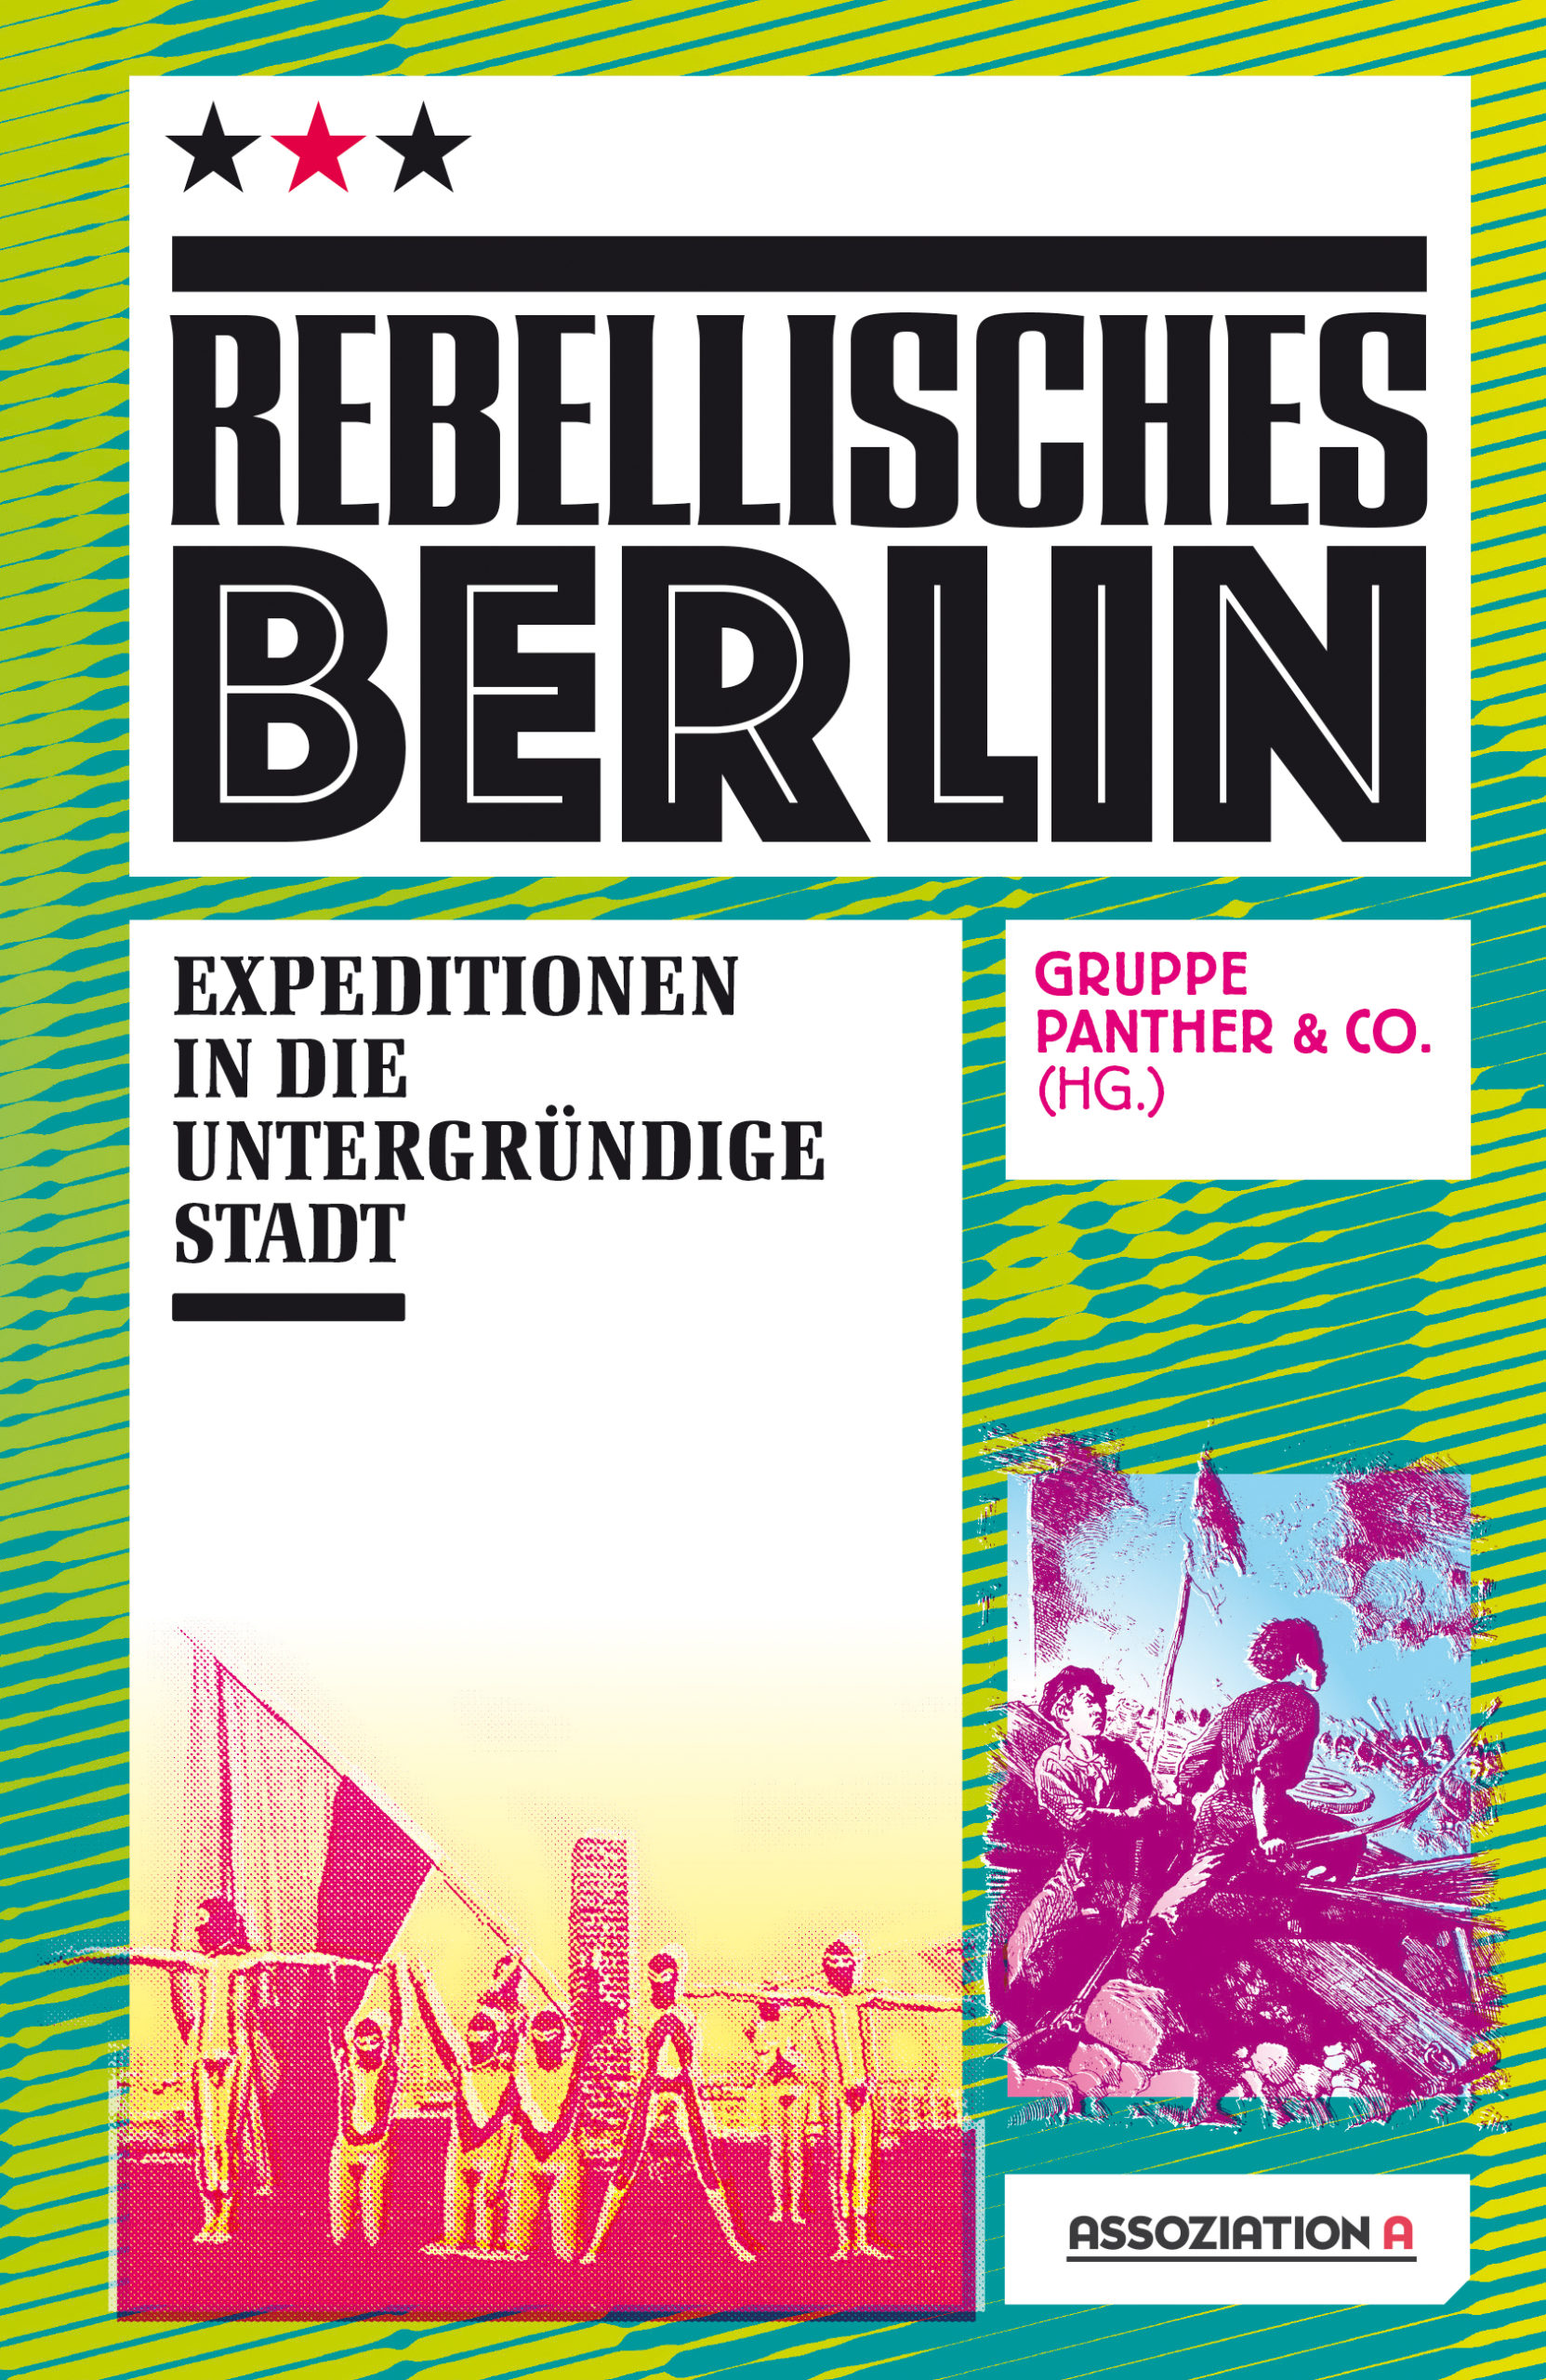 Rebellisches Berlin Expeditionen in die untergründige Stadt heruasgegeben von der Gruppe Panther & Co., Assoziation A, 840 Seiten, Zahlreiche Fotos, Abb. und Karten, Französische Broschur, 29,80 Euro. 